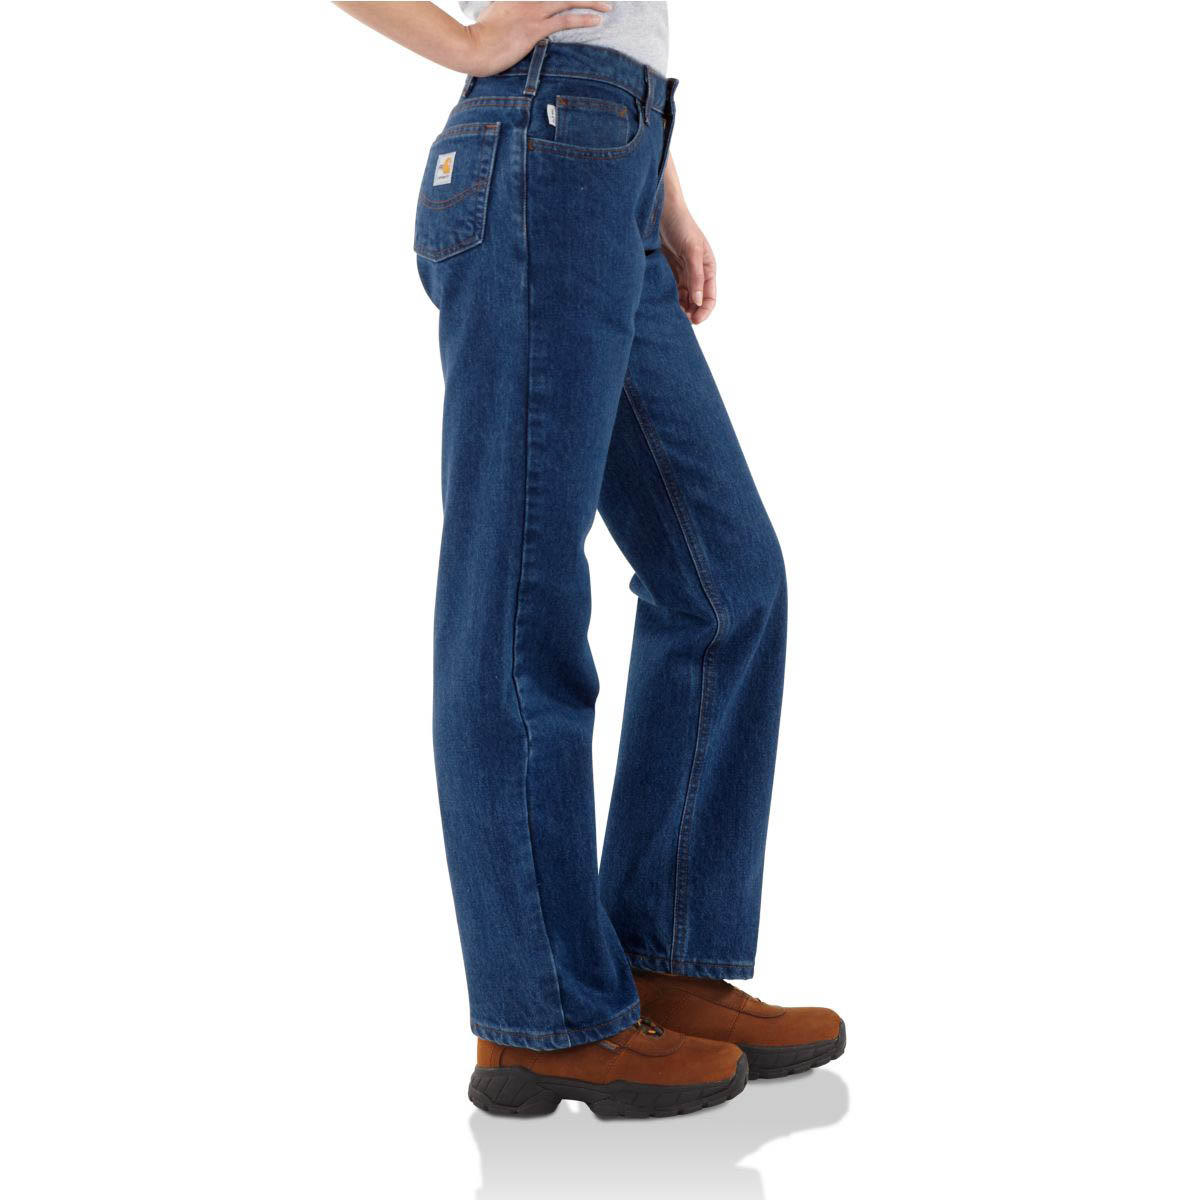 Carhartt Women's Flame Resistant Cotton Blended Denim Jean Straight Leg